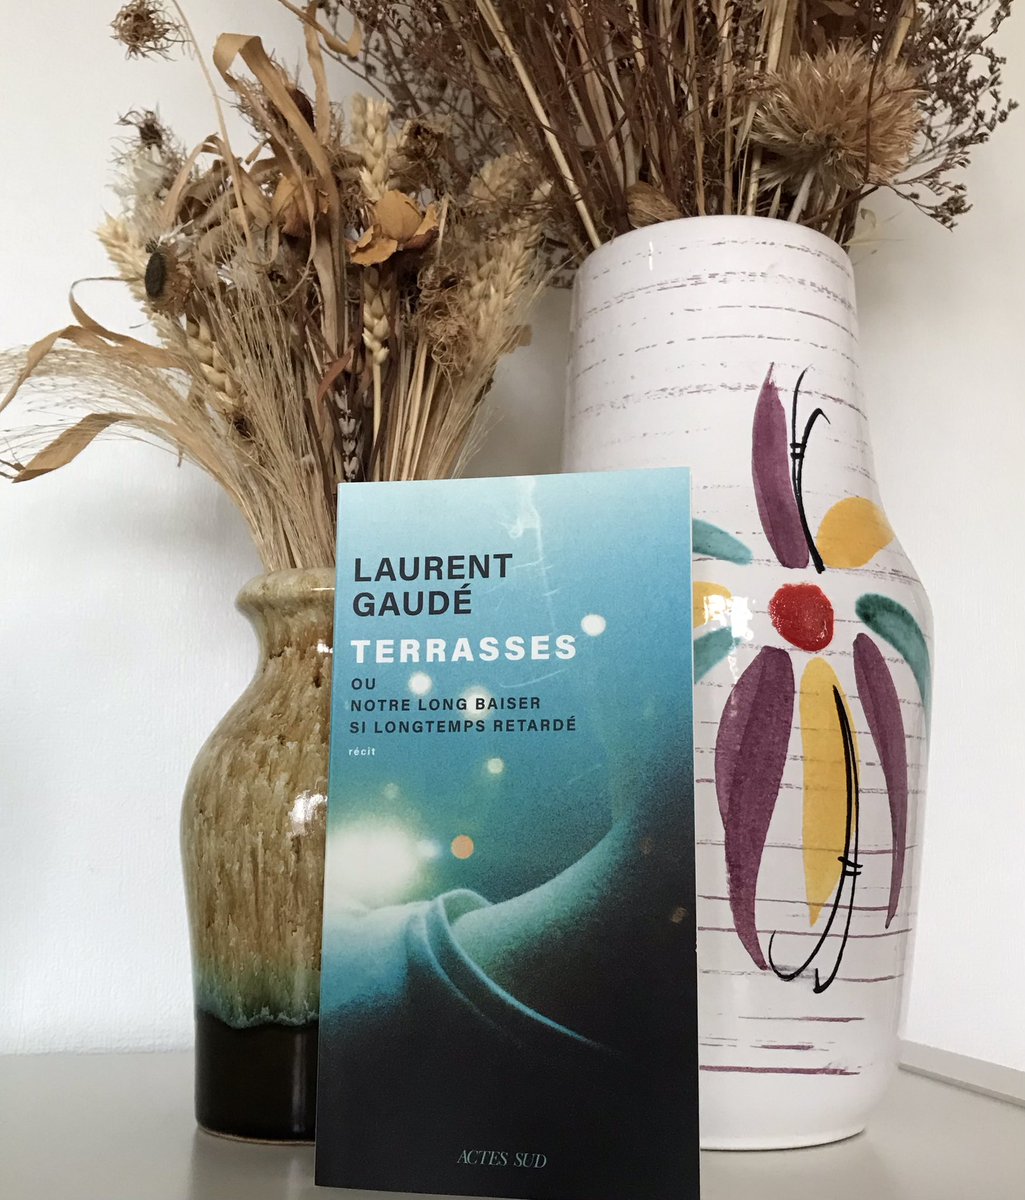 « Terrasses, ou notre long baiser si longtemps retardé », de #LaurentGaudé. Muette d’émotion devant la puissance de ce récit #13novembre2015 #books 📚